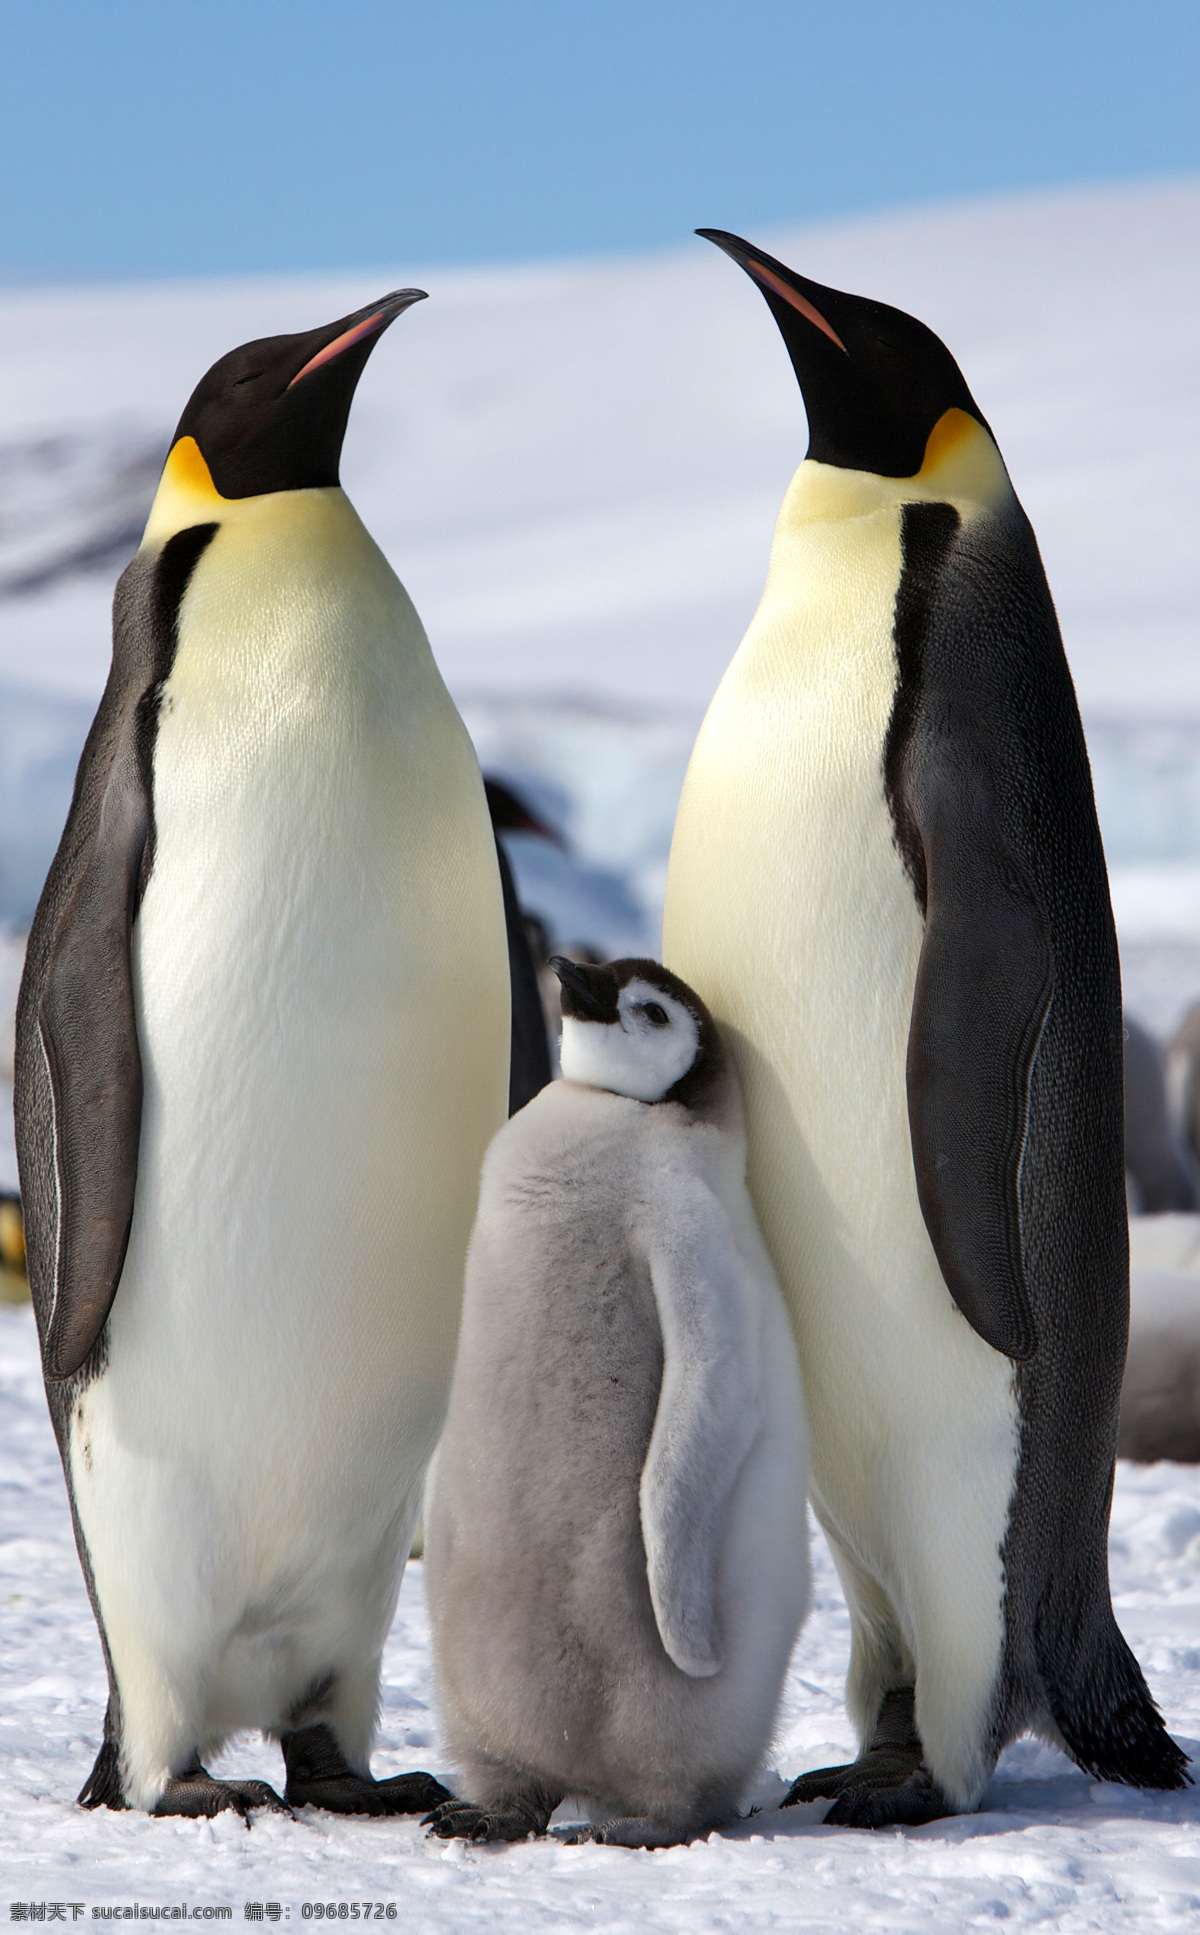 唯美 动物 可爱 野生 企鹅 南极企鹅 帝企鹅 可爱企鹅 生物世界 野生动物